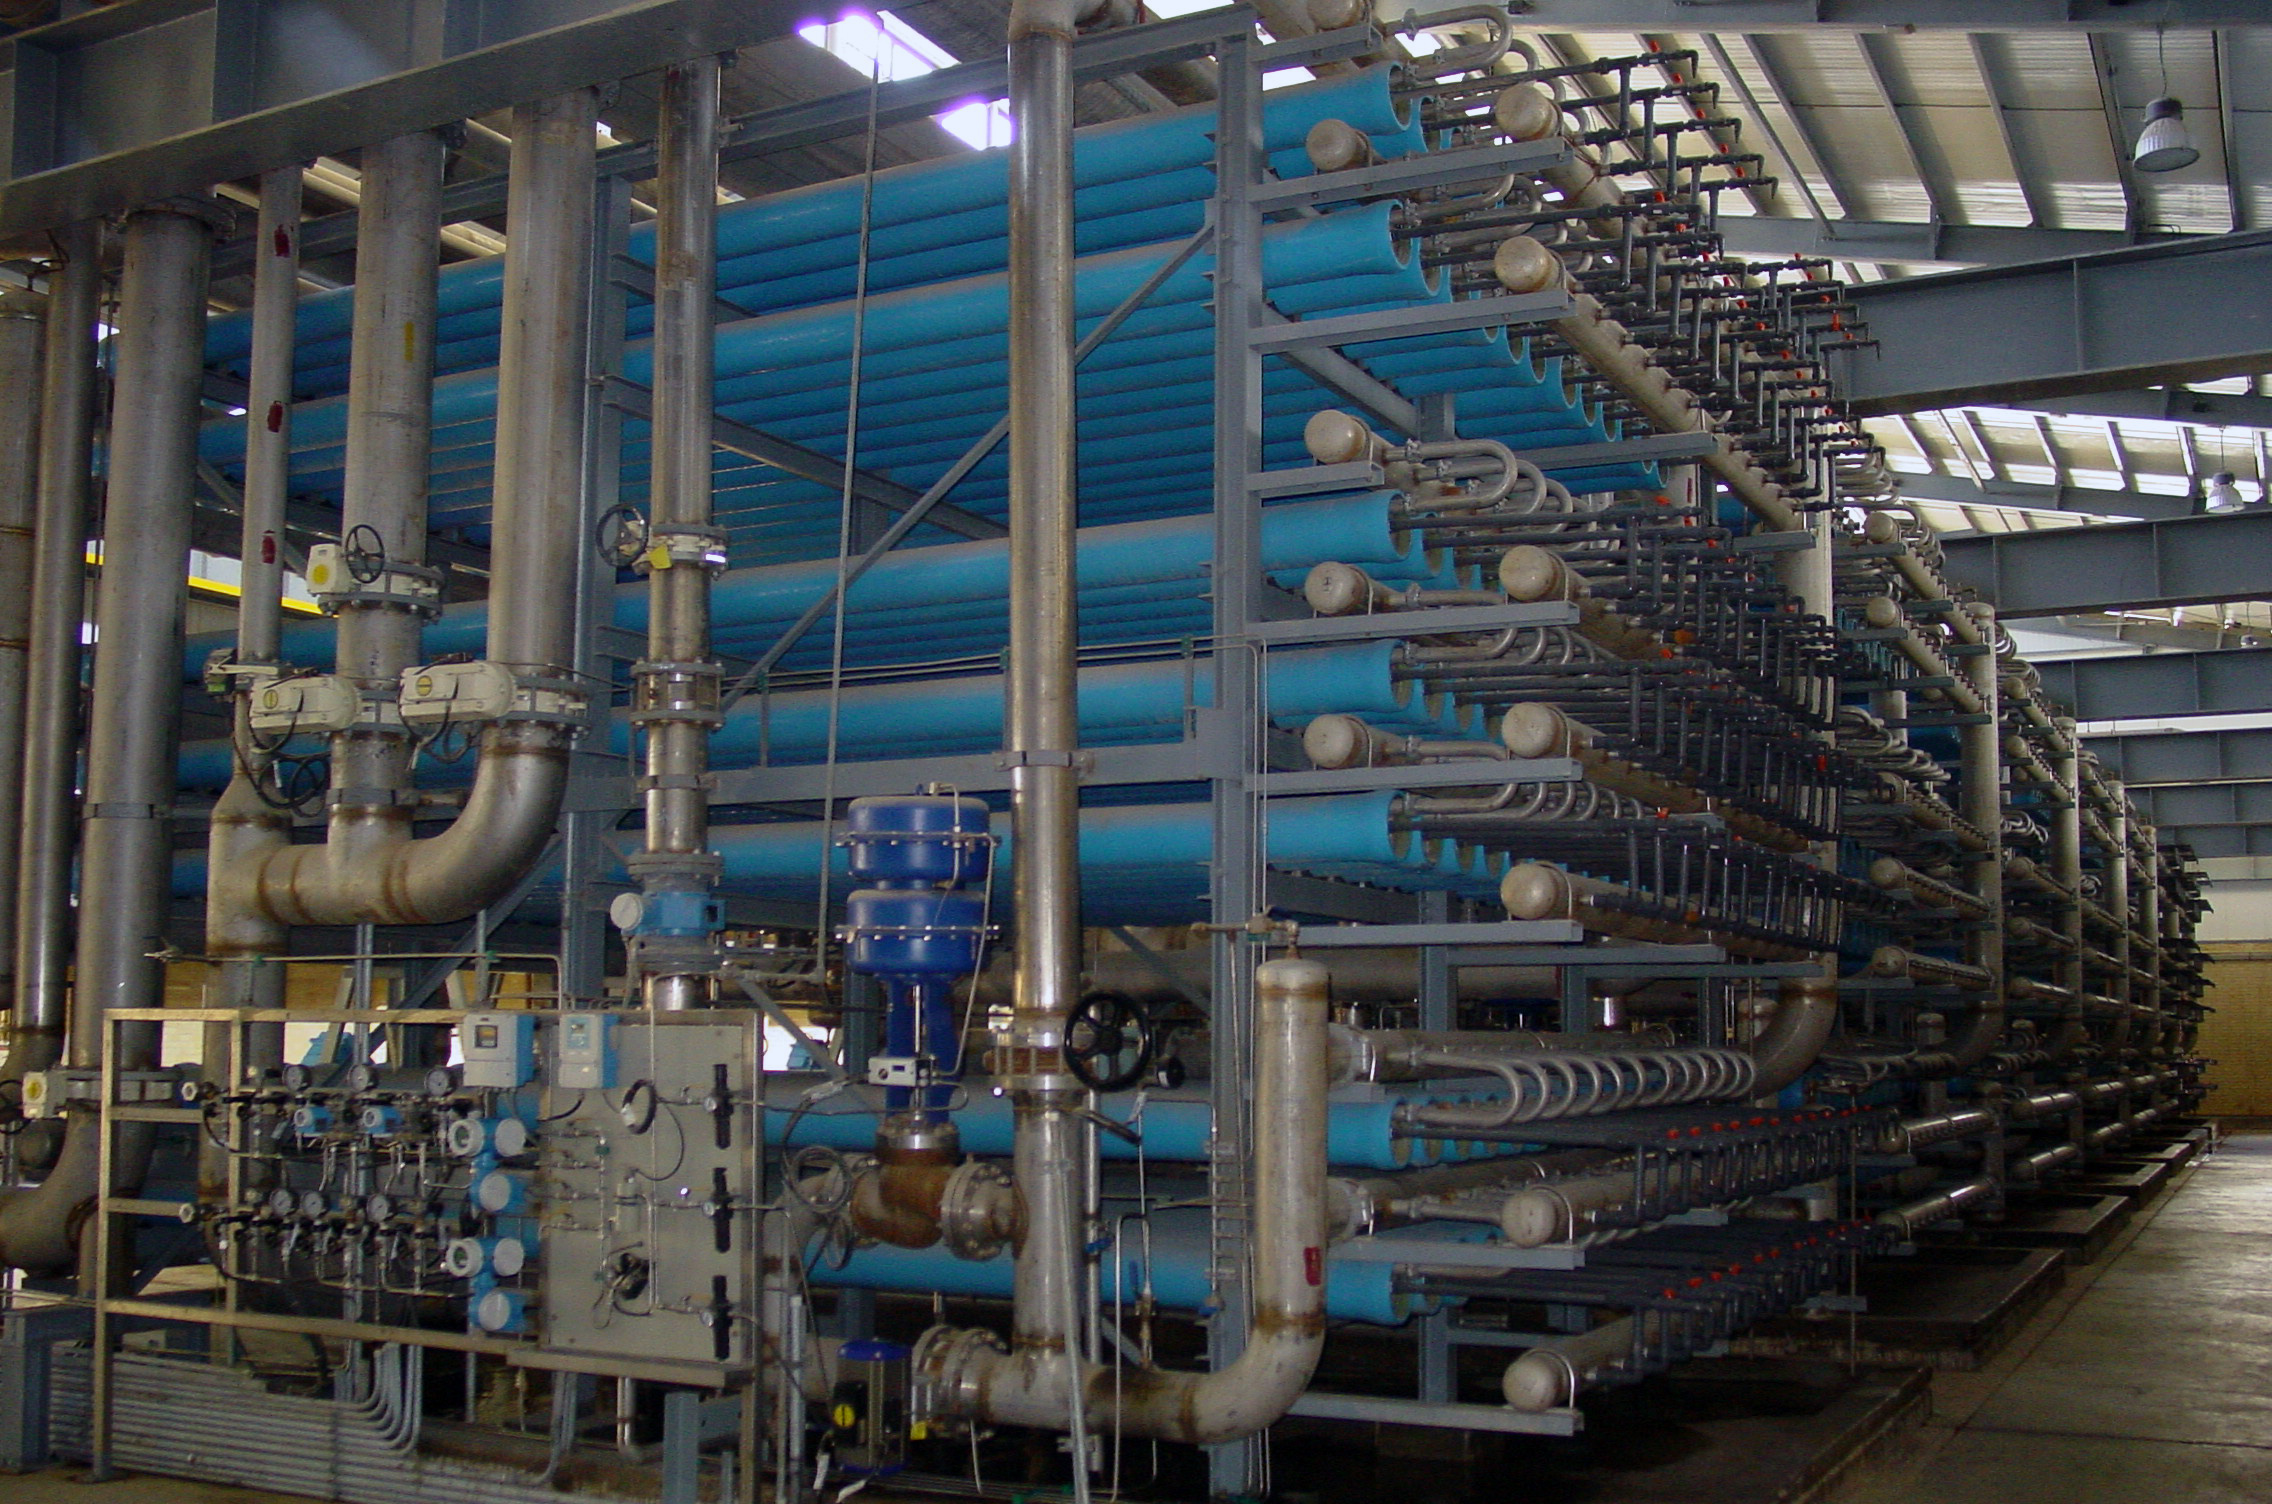 شیرهای کنترل آب خروجی واحد بازیافت آب دور ریز اسمز معکوس در پتروشیمی فجر باز طراحی شدند